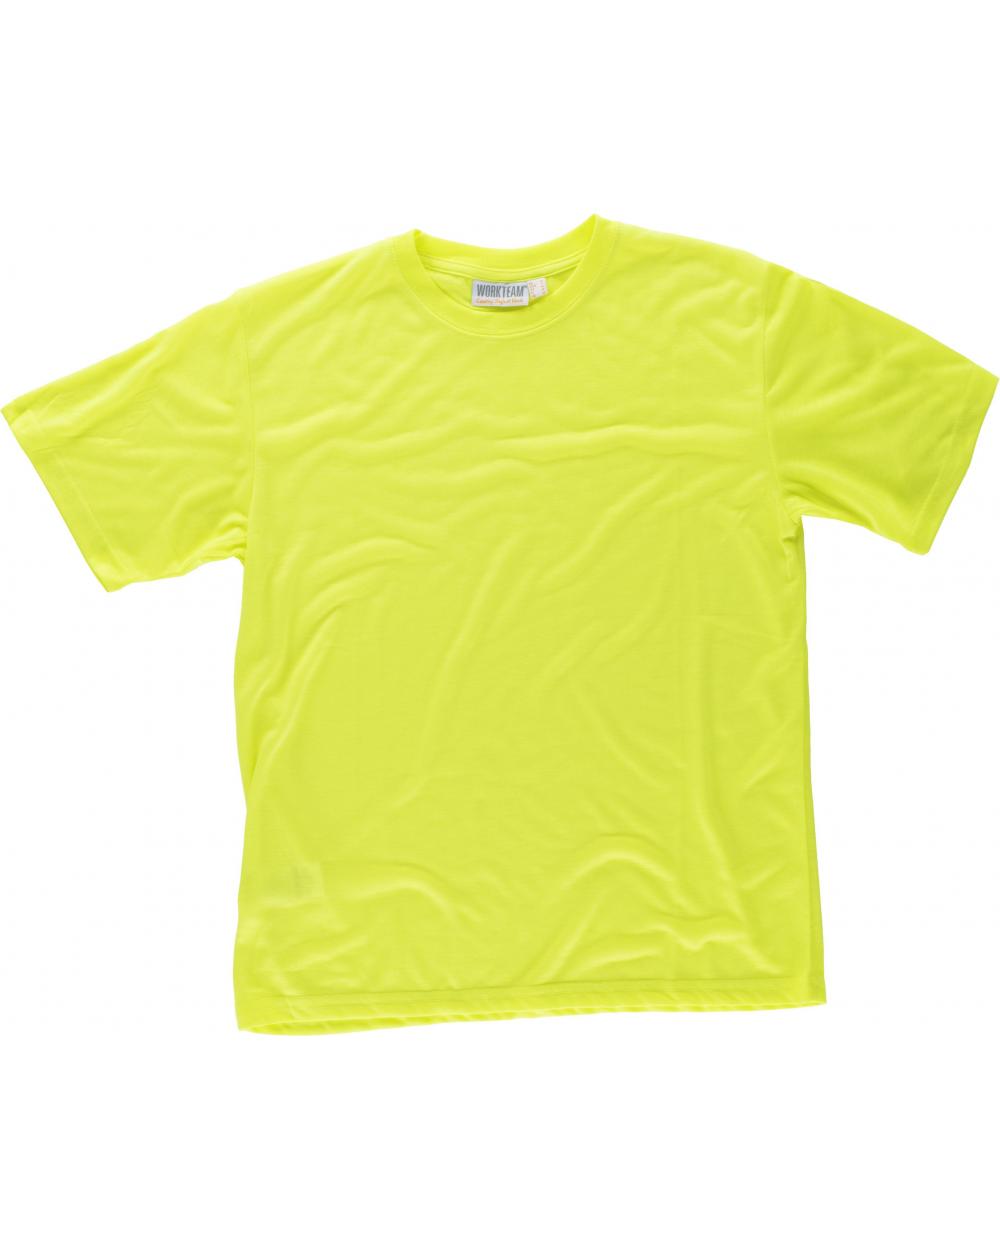 Comprar Camiseta de poliester tacto algodón C6010 Amarillo AV workteam delante